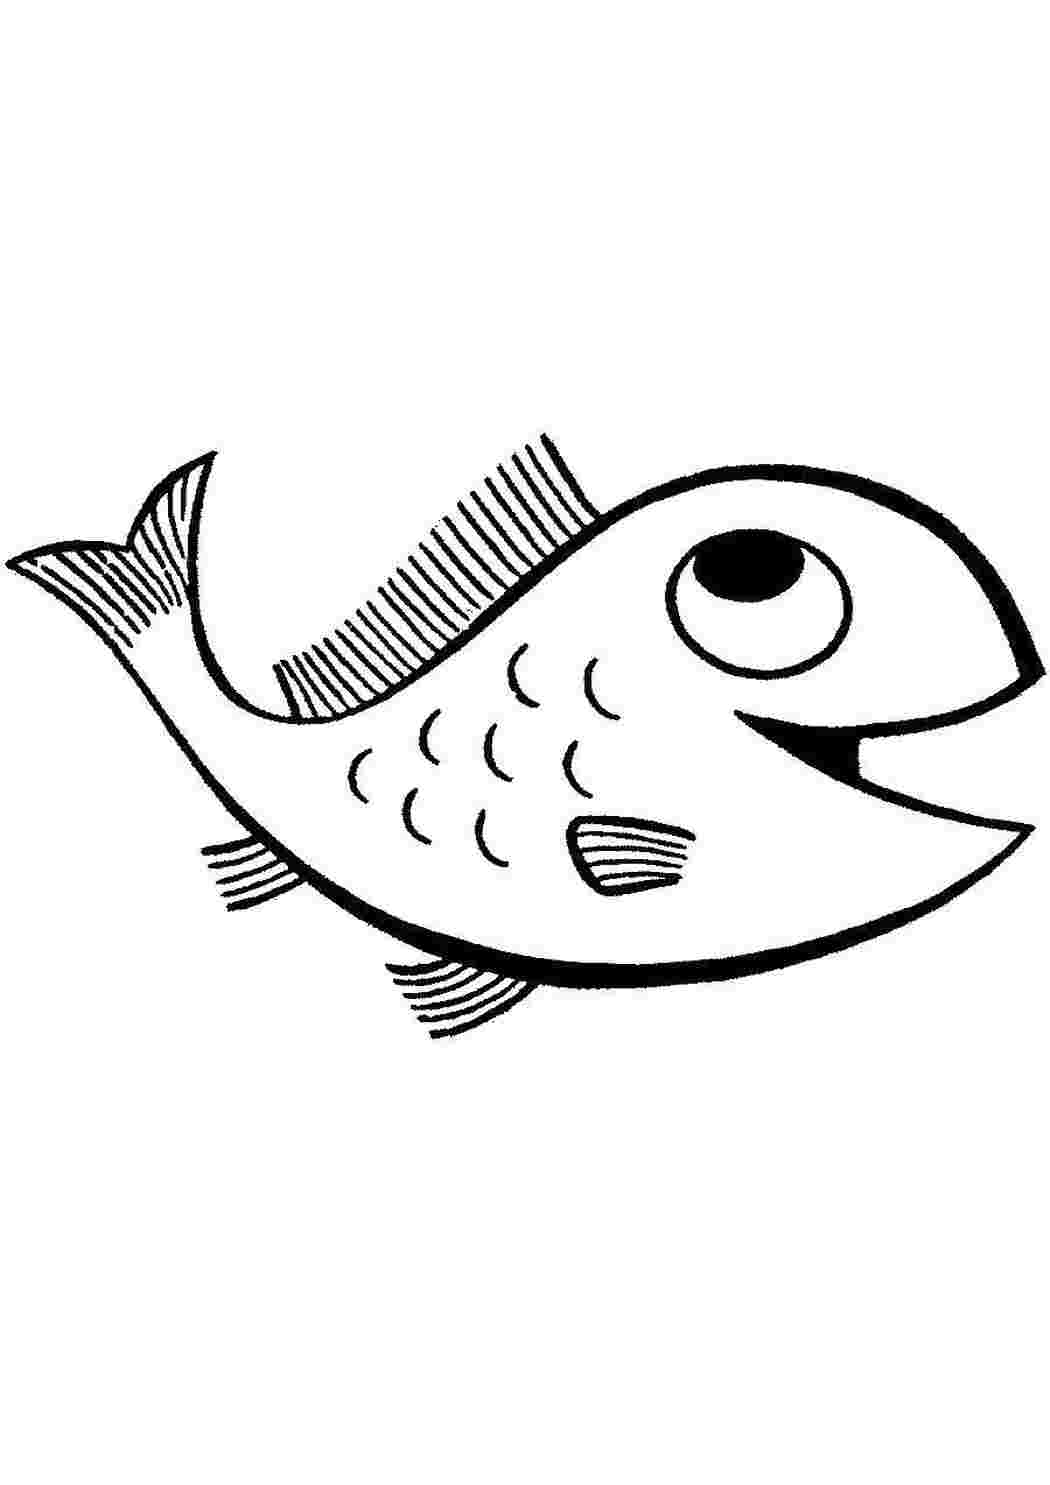 Рыба Ерш раскраска для детей